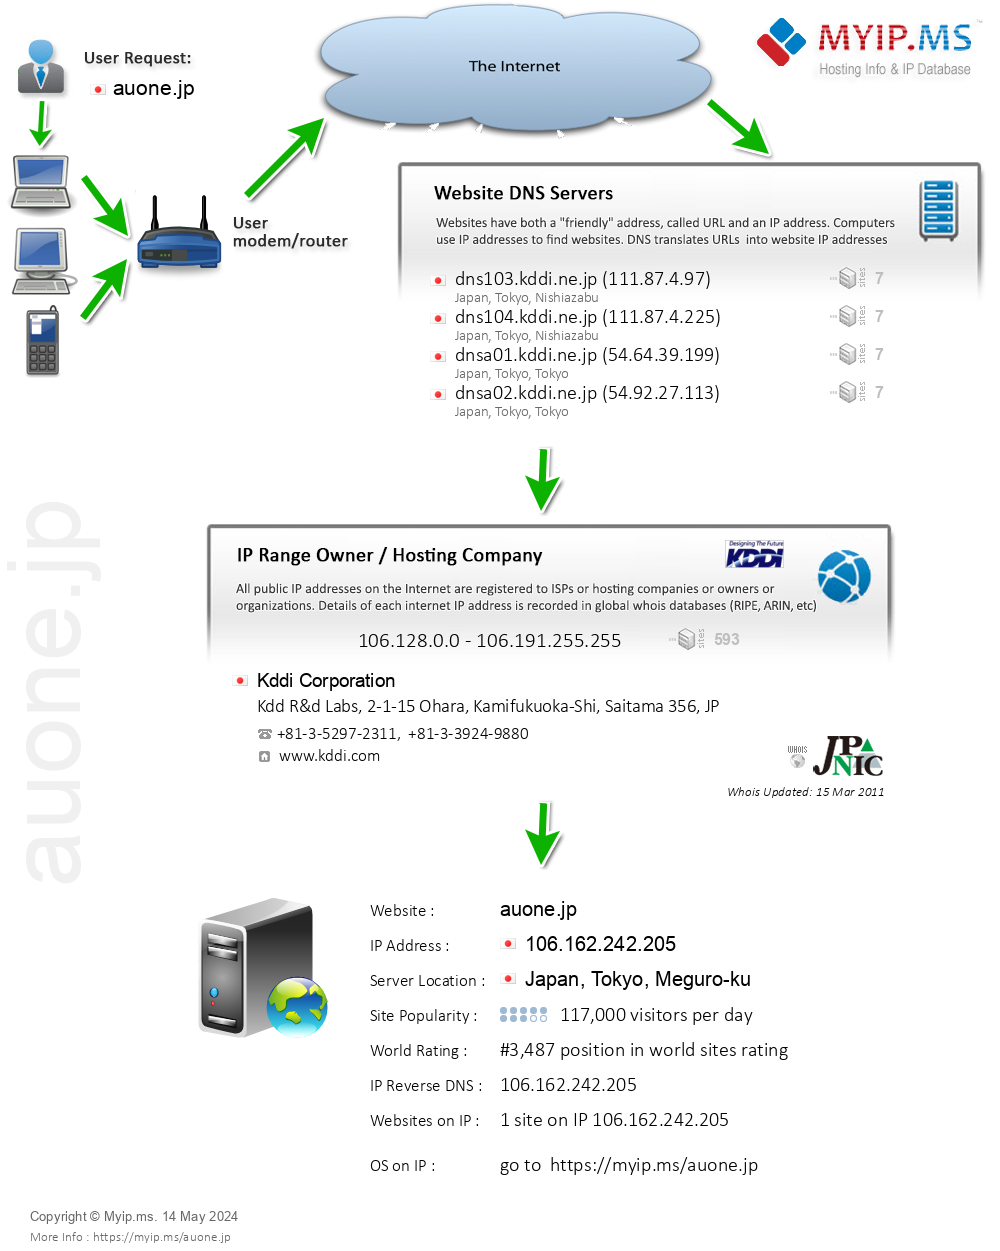 Auone.jp - Website Hosting Visual IP Diagram